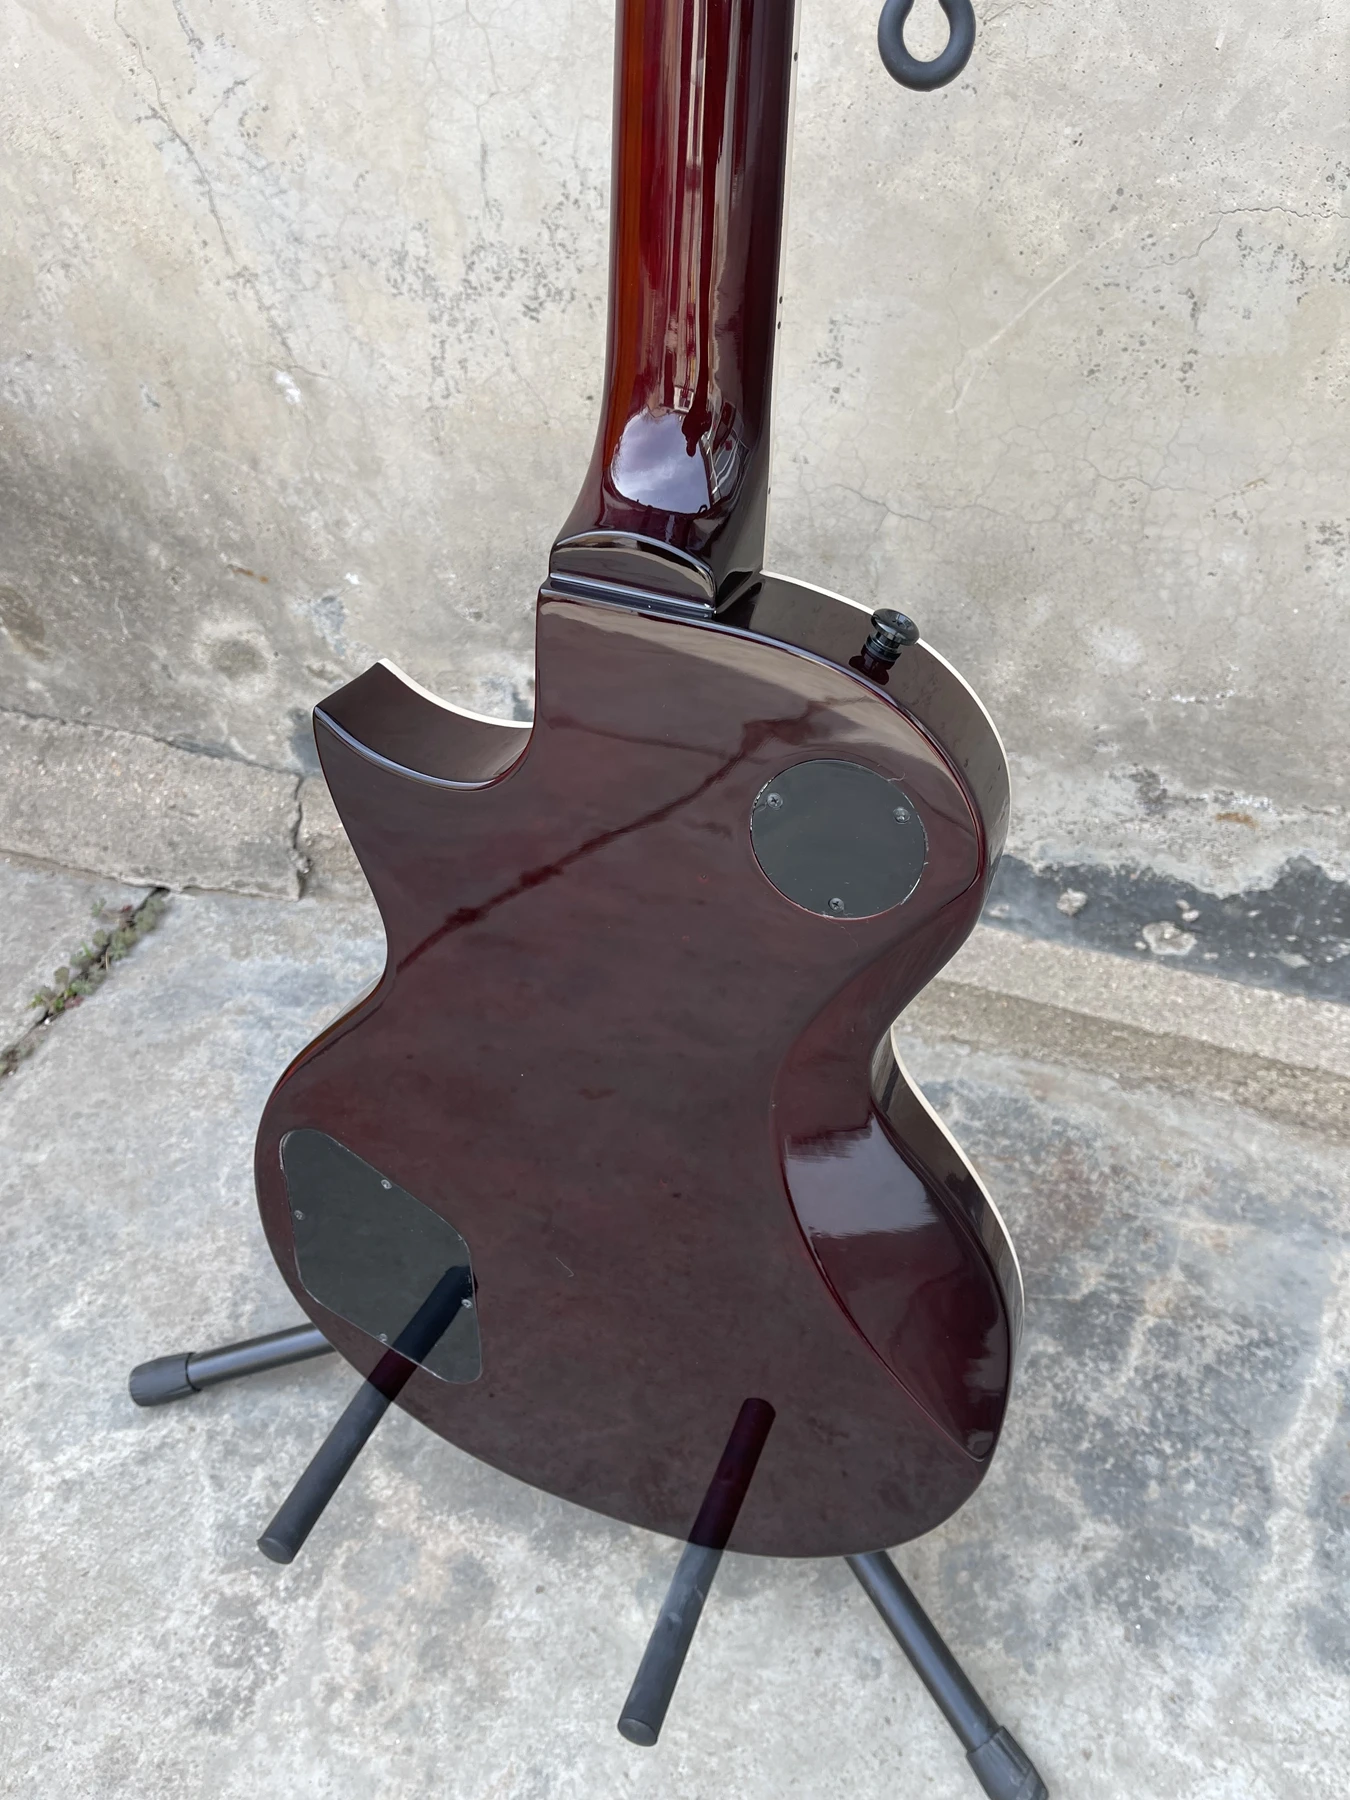 Červená ESP gitara, shell, intarzované ružové drevo hmatníkom, kvalitný high-end, nákladovo efektívne